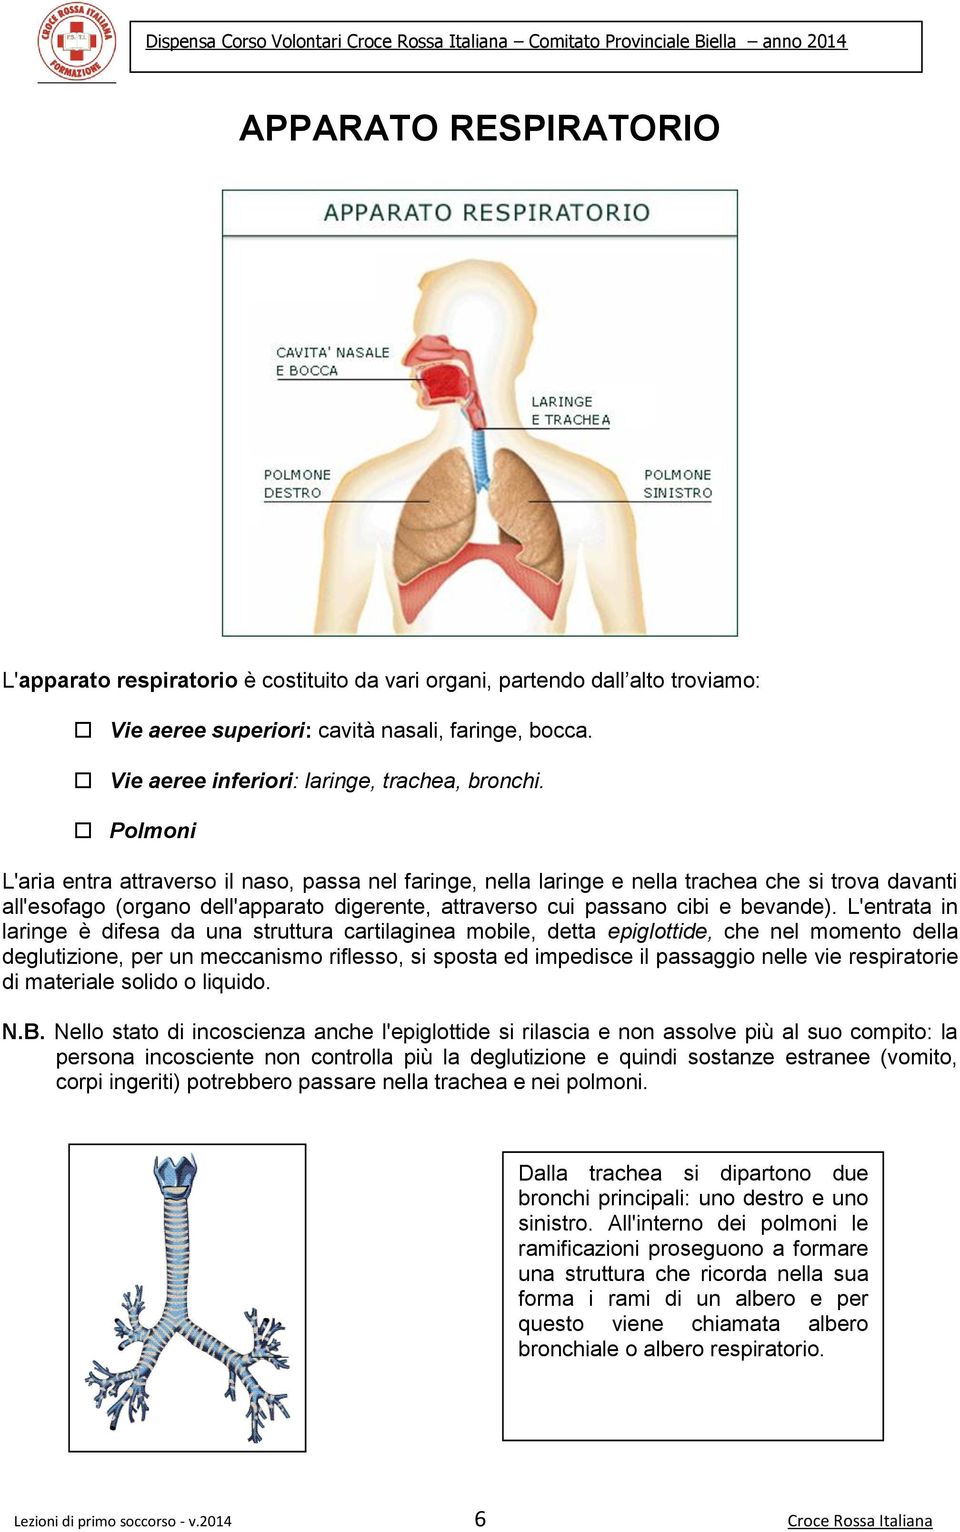 L'entrata in laringe è difesa da una struttura cartilaginea mbile, detta epiglttide, che nel mment della deglutizine, per un meccanism rifless, si spsta ed impedisce il passaggi nelle vie respiratrie